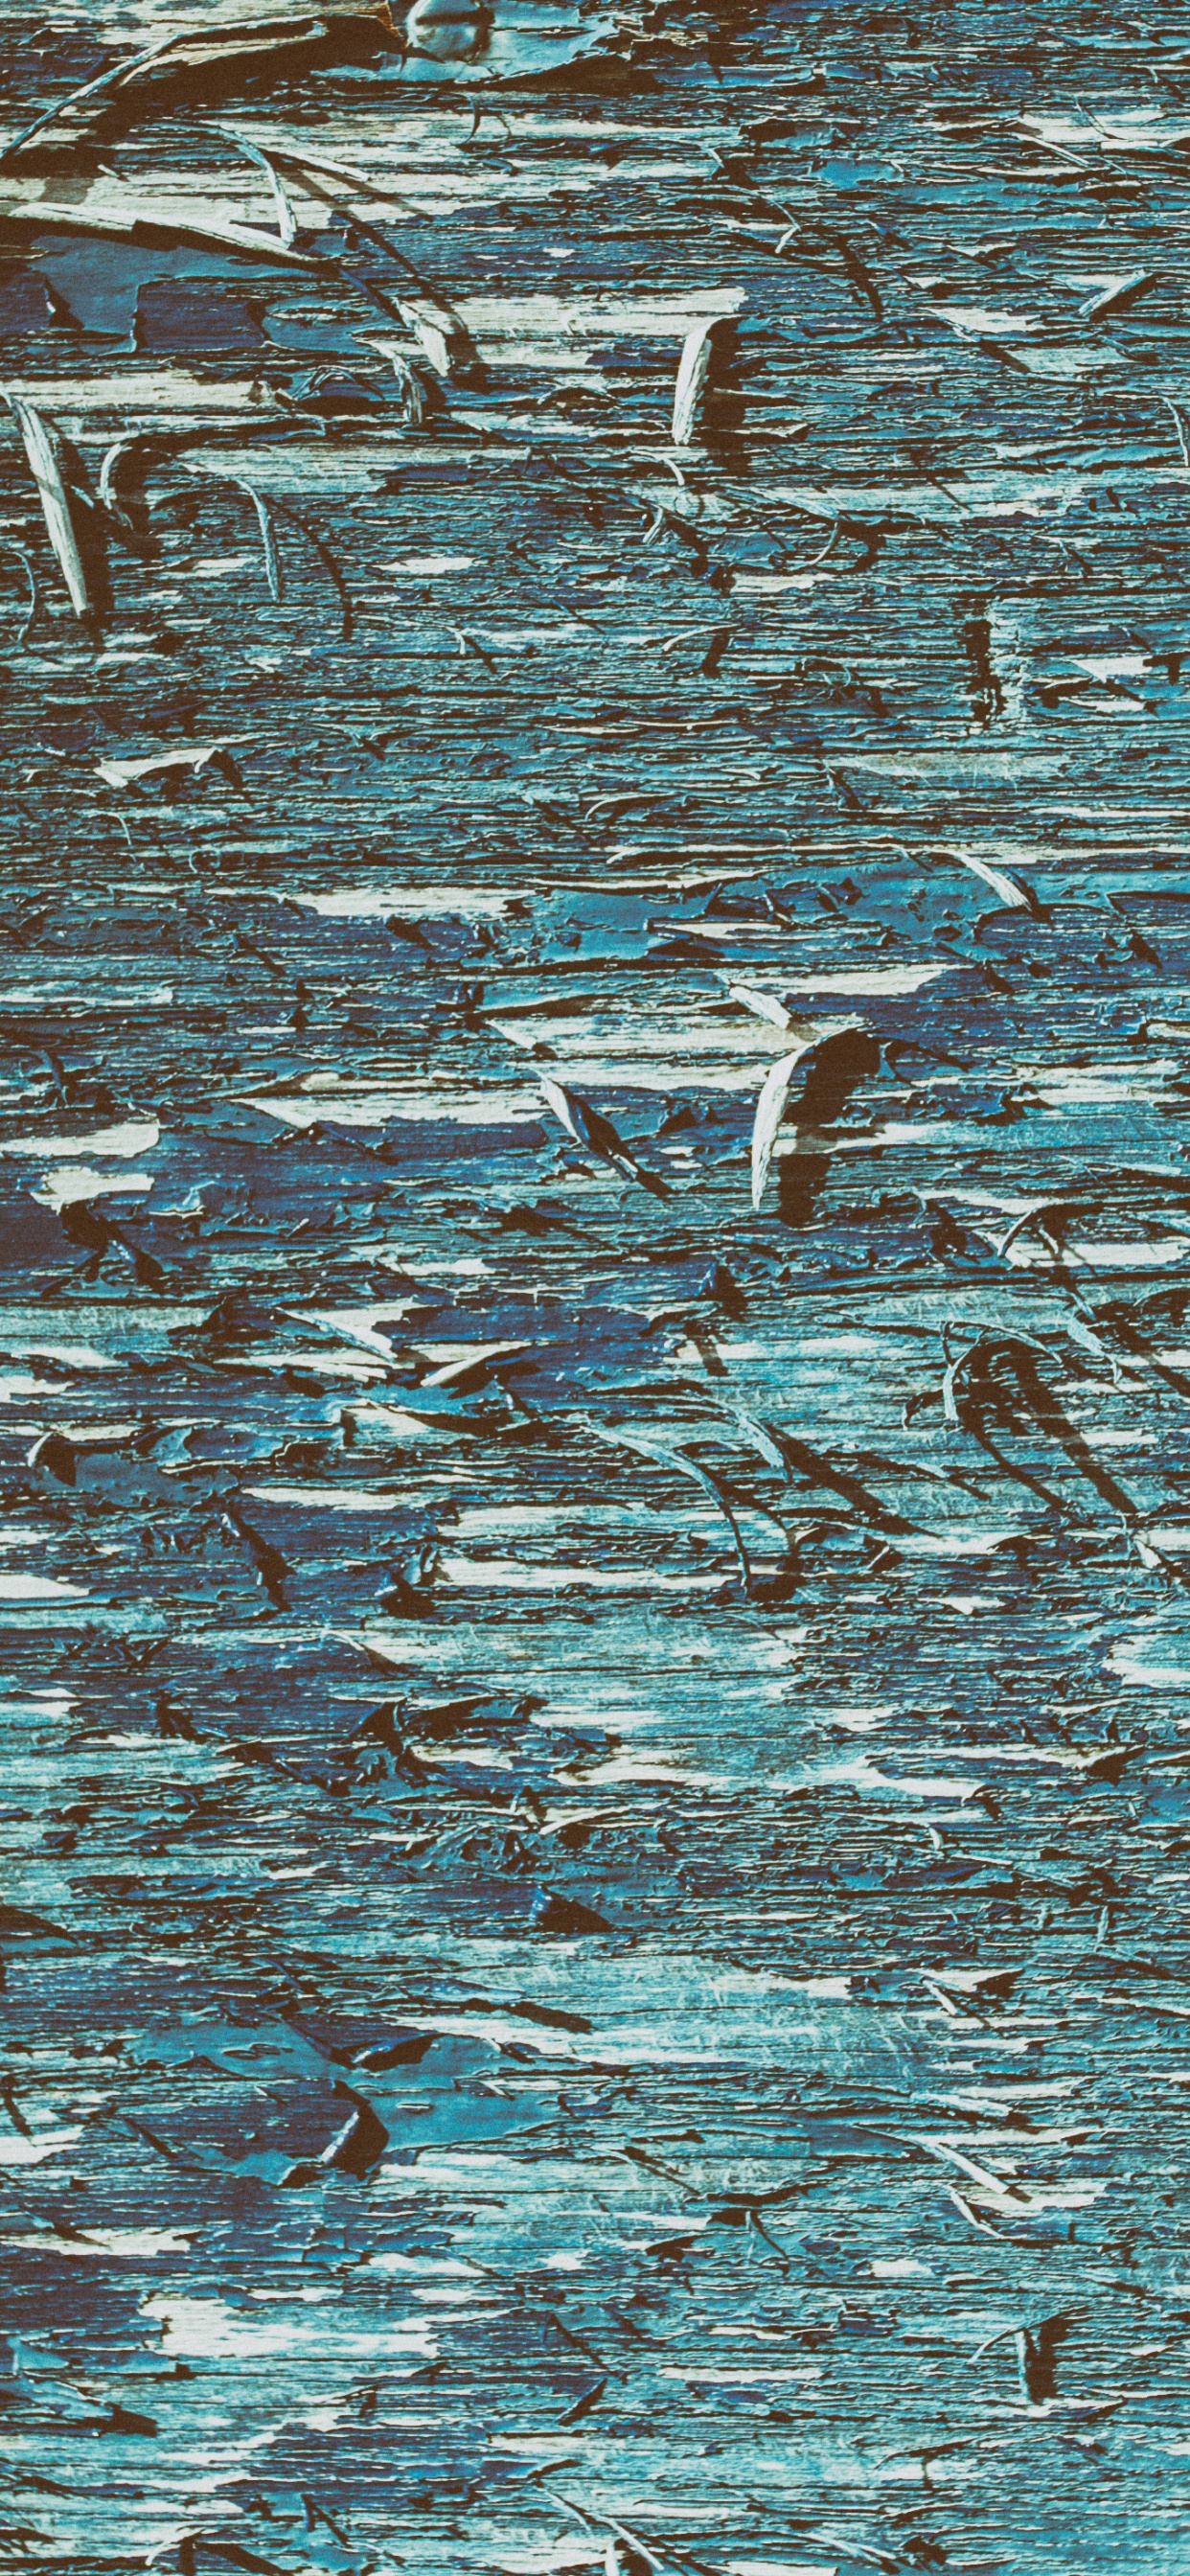 Oiseaux Blancs et Noirs Sur L'eau. Wallpaper in 1242x2688 Resolution